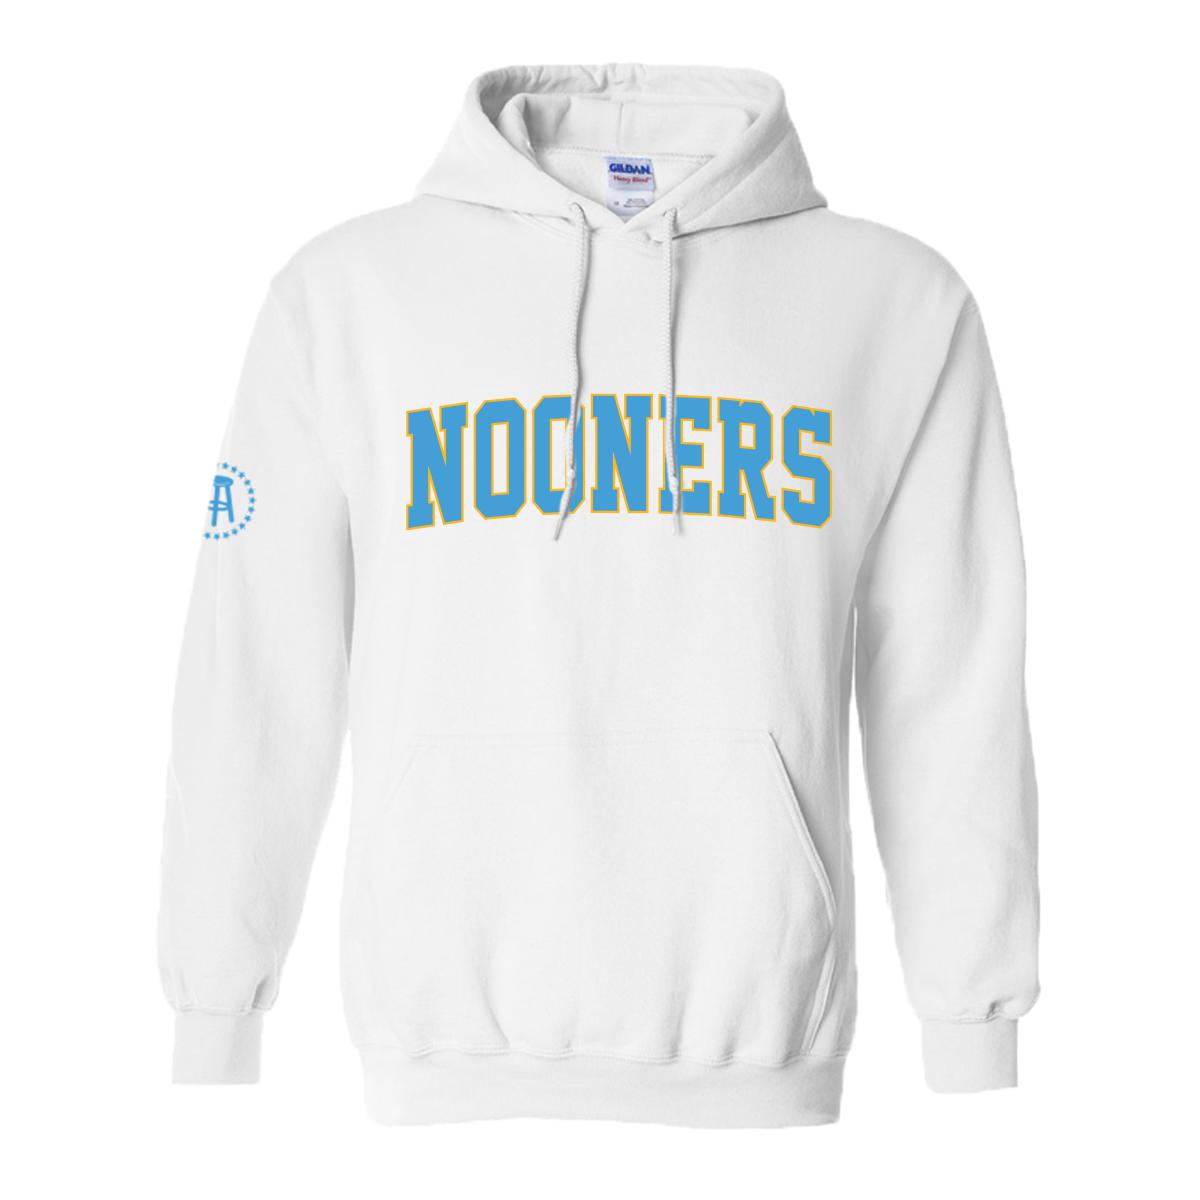 Nooners Hoodie-Hoodies & Sweatshirts-Nooners-White-S-Barstool Sports